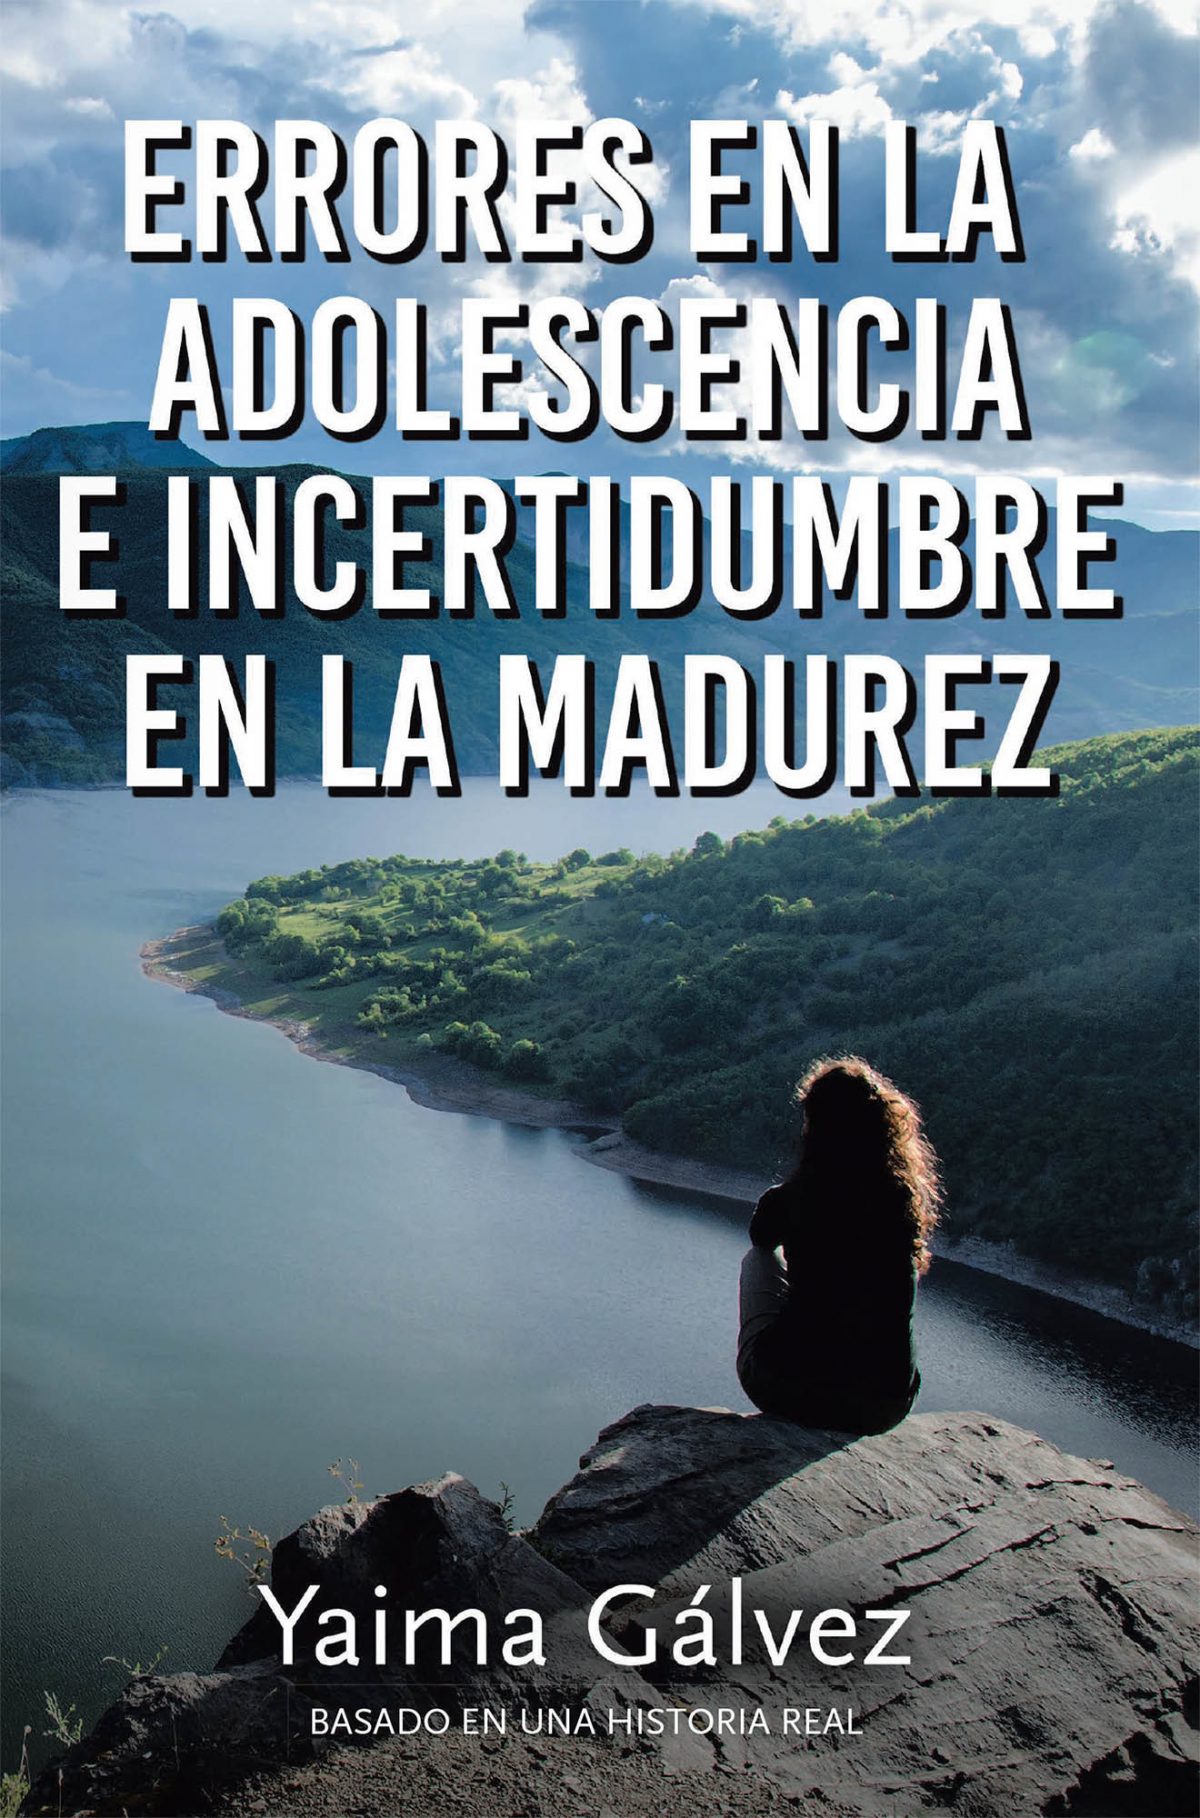 El nuevo libro de Yaima Galvez, Errores en la Adolescencia e Incertidumbre en la Madurez, una magnífica obra, nos cuenta la vida dolorosa de una emigrante violada, maltratada por el destino que nunca perdió su rumbo.